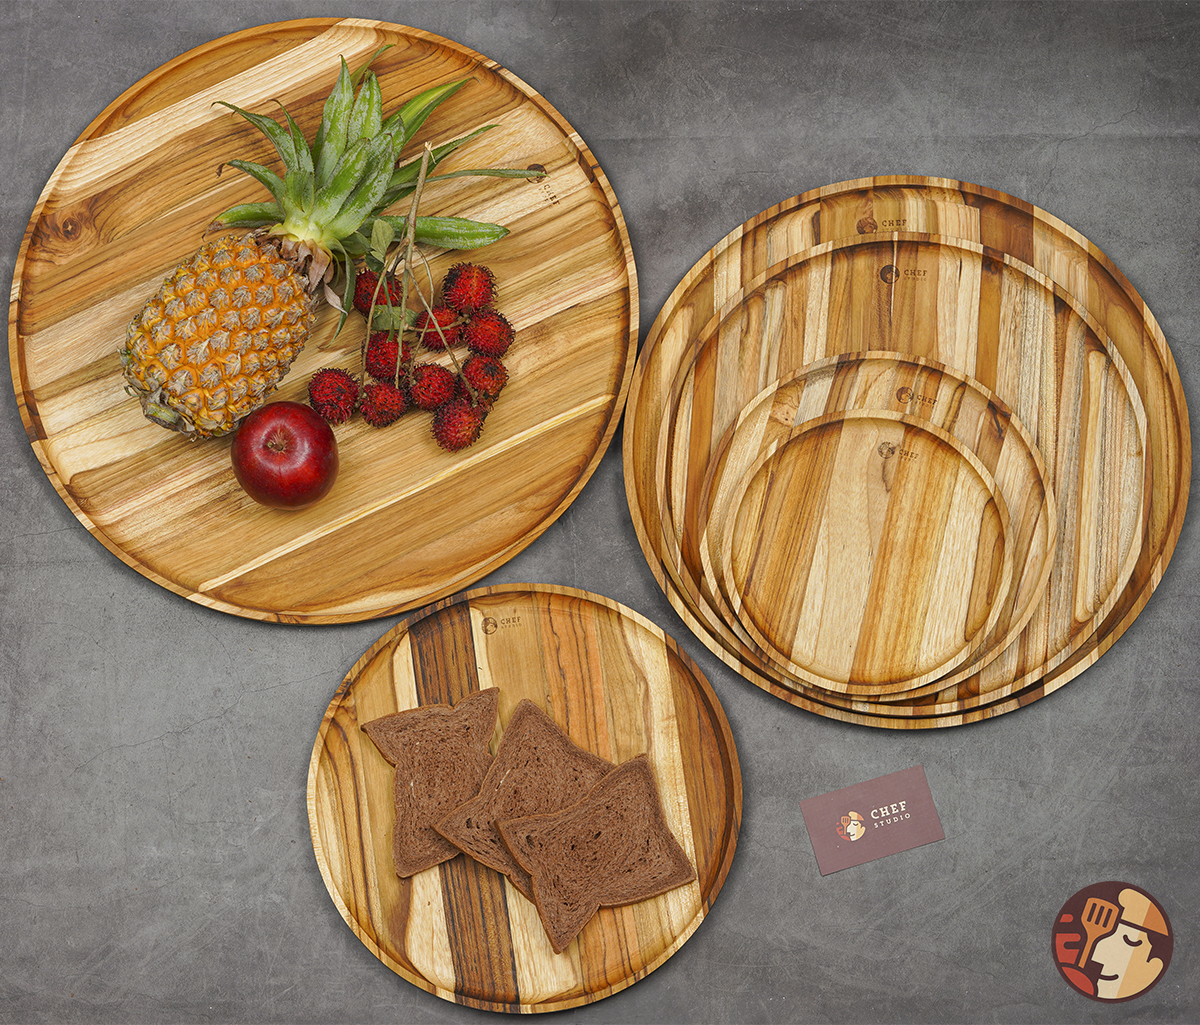 Khay gỗ Teak Chef Studio cao cấp hình tròn nhiều kích cỡ, dày 2 cm dùng decor, trang trí đồ ăn